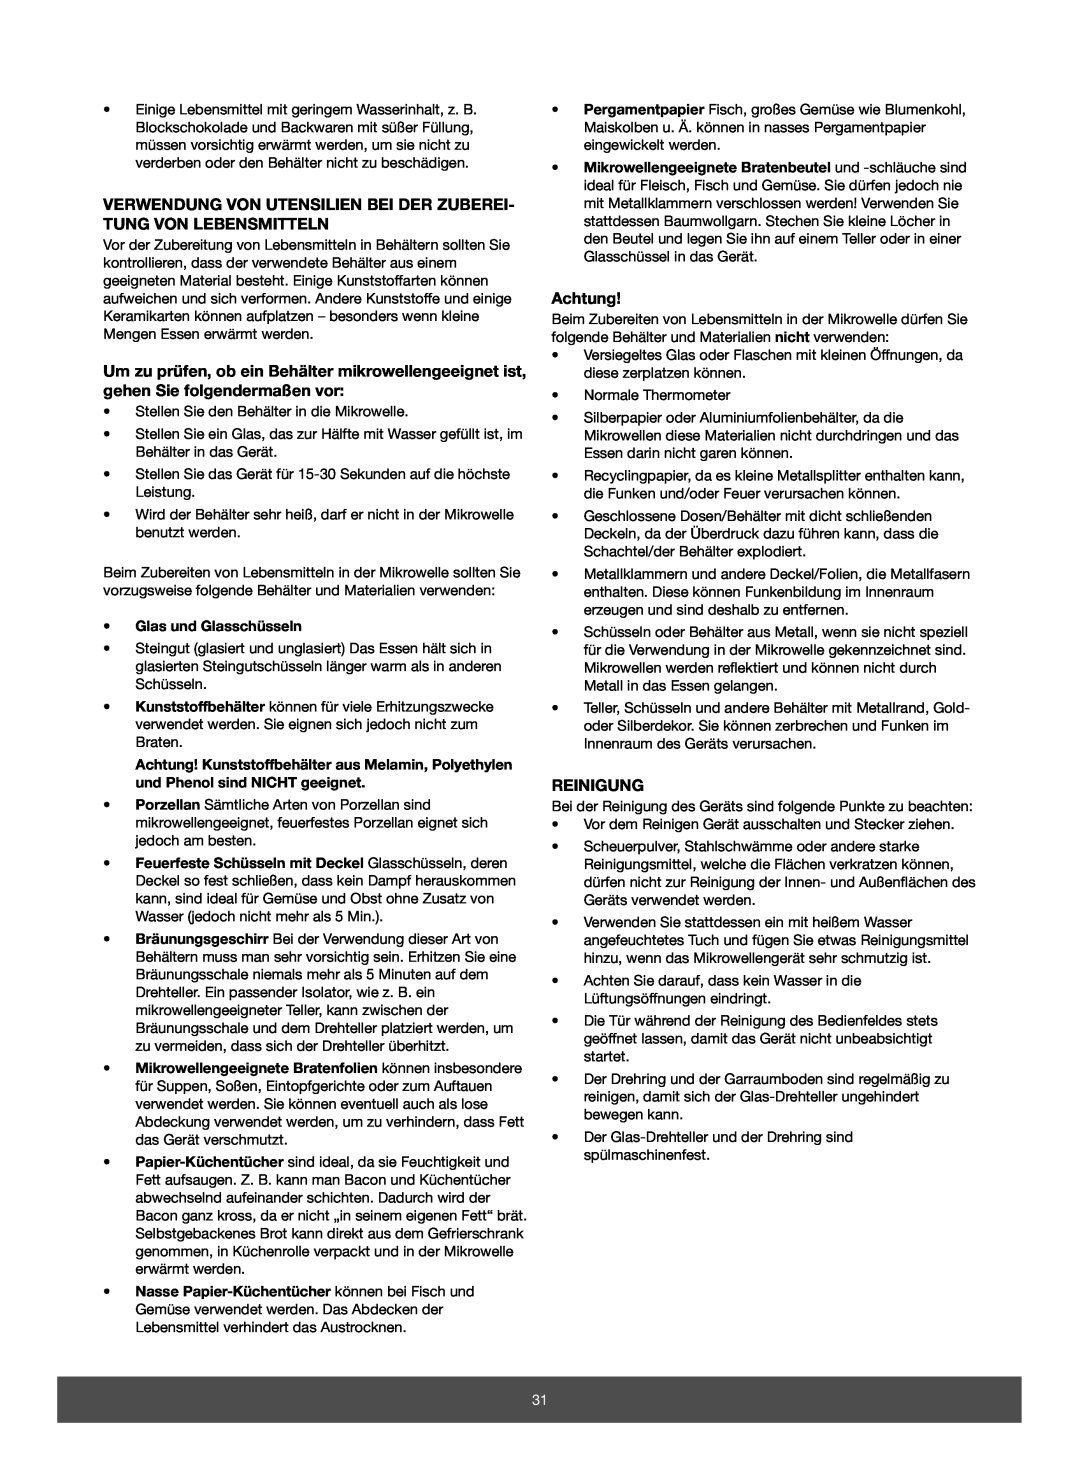 Melissa 653-082 manual Verwendung Von Utensilien Bei Der Zuberei- Tung Von Lebensmitteln, Achtung, Reinigung 